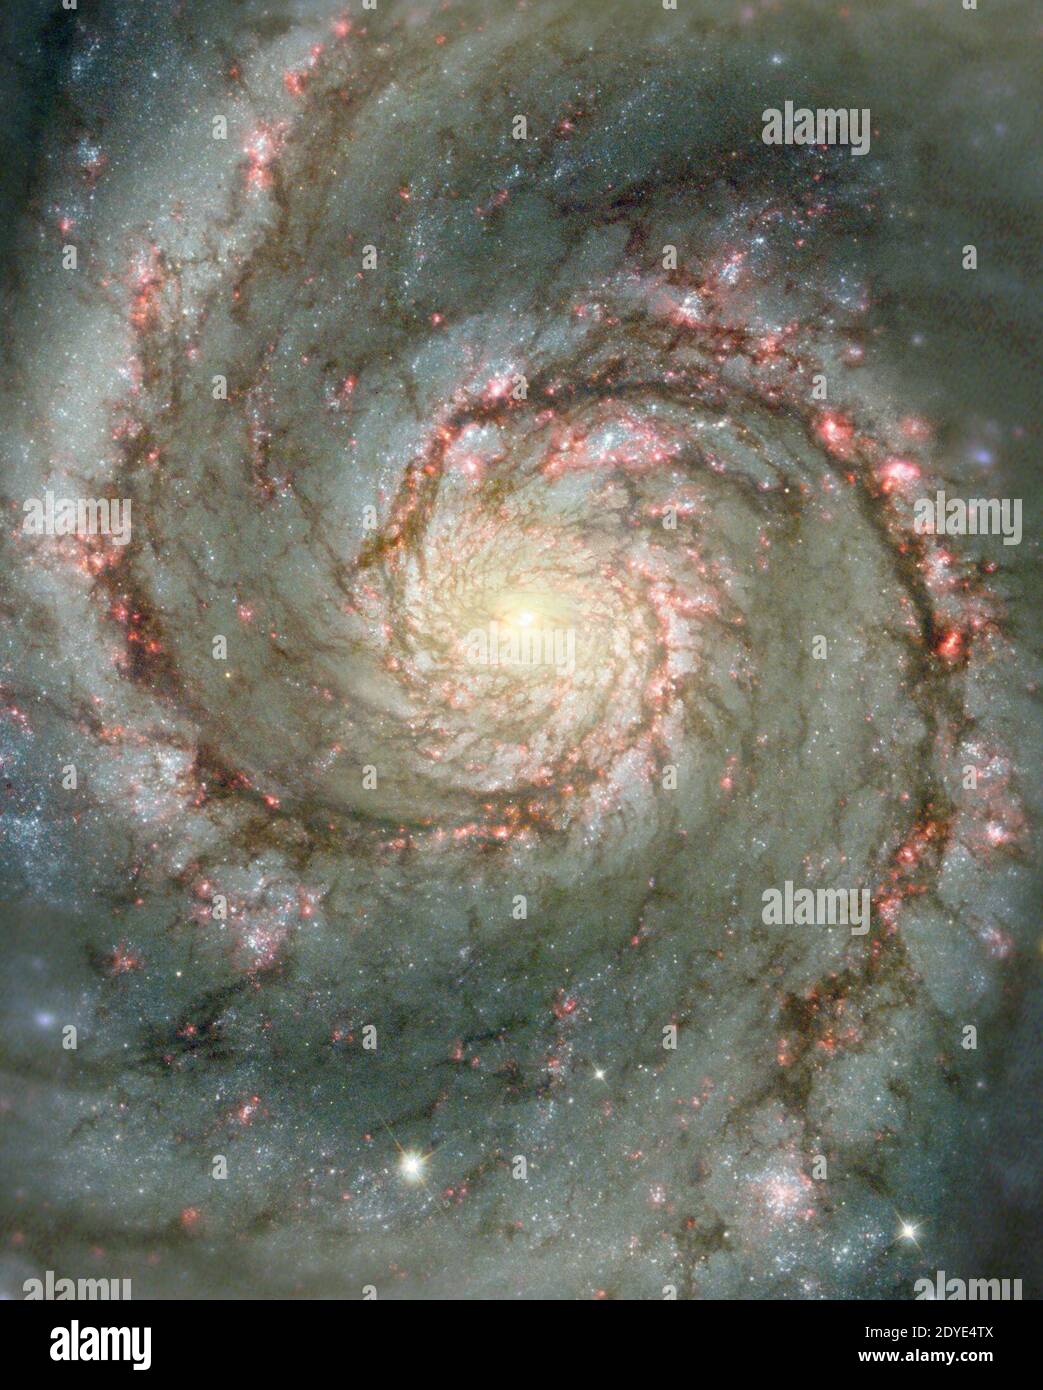 Le Whirlpool Galaxy est une galaxie spirale classique. Avec seulement 30 millions d'années-lumière distantes et 60 mille années-lumière à travers, M51, également connu sous le nom de NGC 5194, est l'une des galaxies les plus lumineuses et les plus pittoresques du ciel. Cette image est une combinaison numérique d'une image au sol provenant du télescope de 0.9 mètres de l'Observatoire national de Kitt Peak et d'une image spatiale du télescope spatial Hubble mettant en évidence des caractéristiques nettes, normalement trop rouges pour être vues. Document photo de Hubble/NASA/ABACAPRESS.COM Banque D'Images